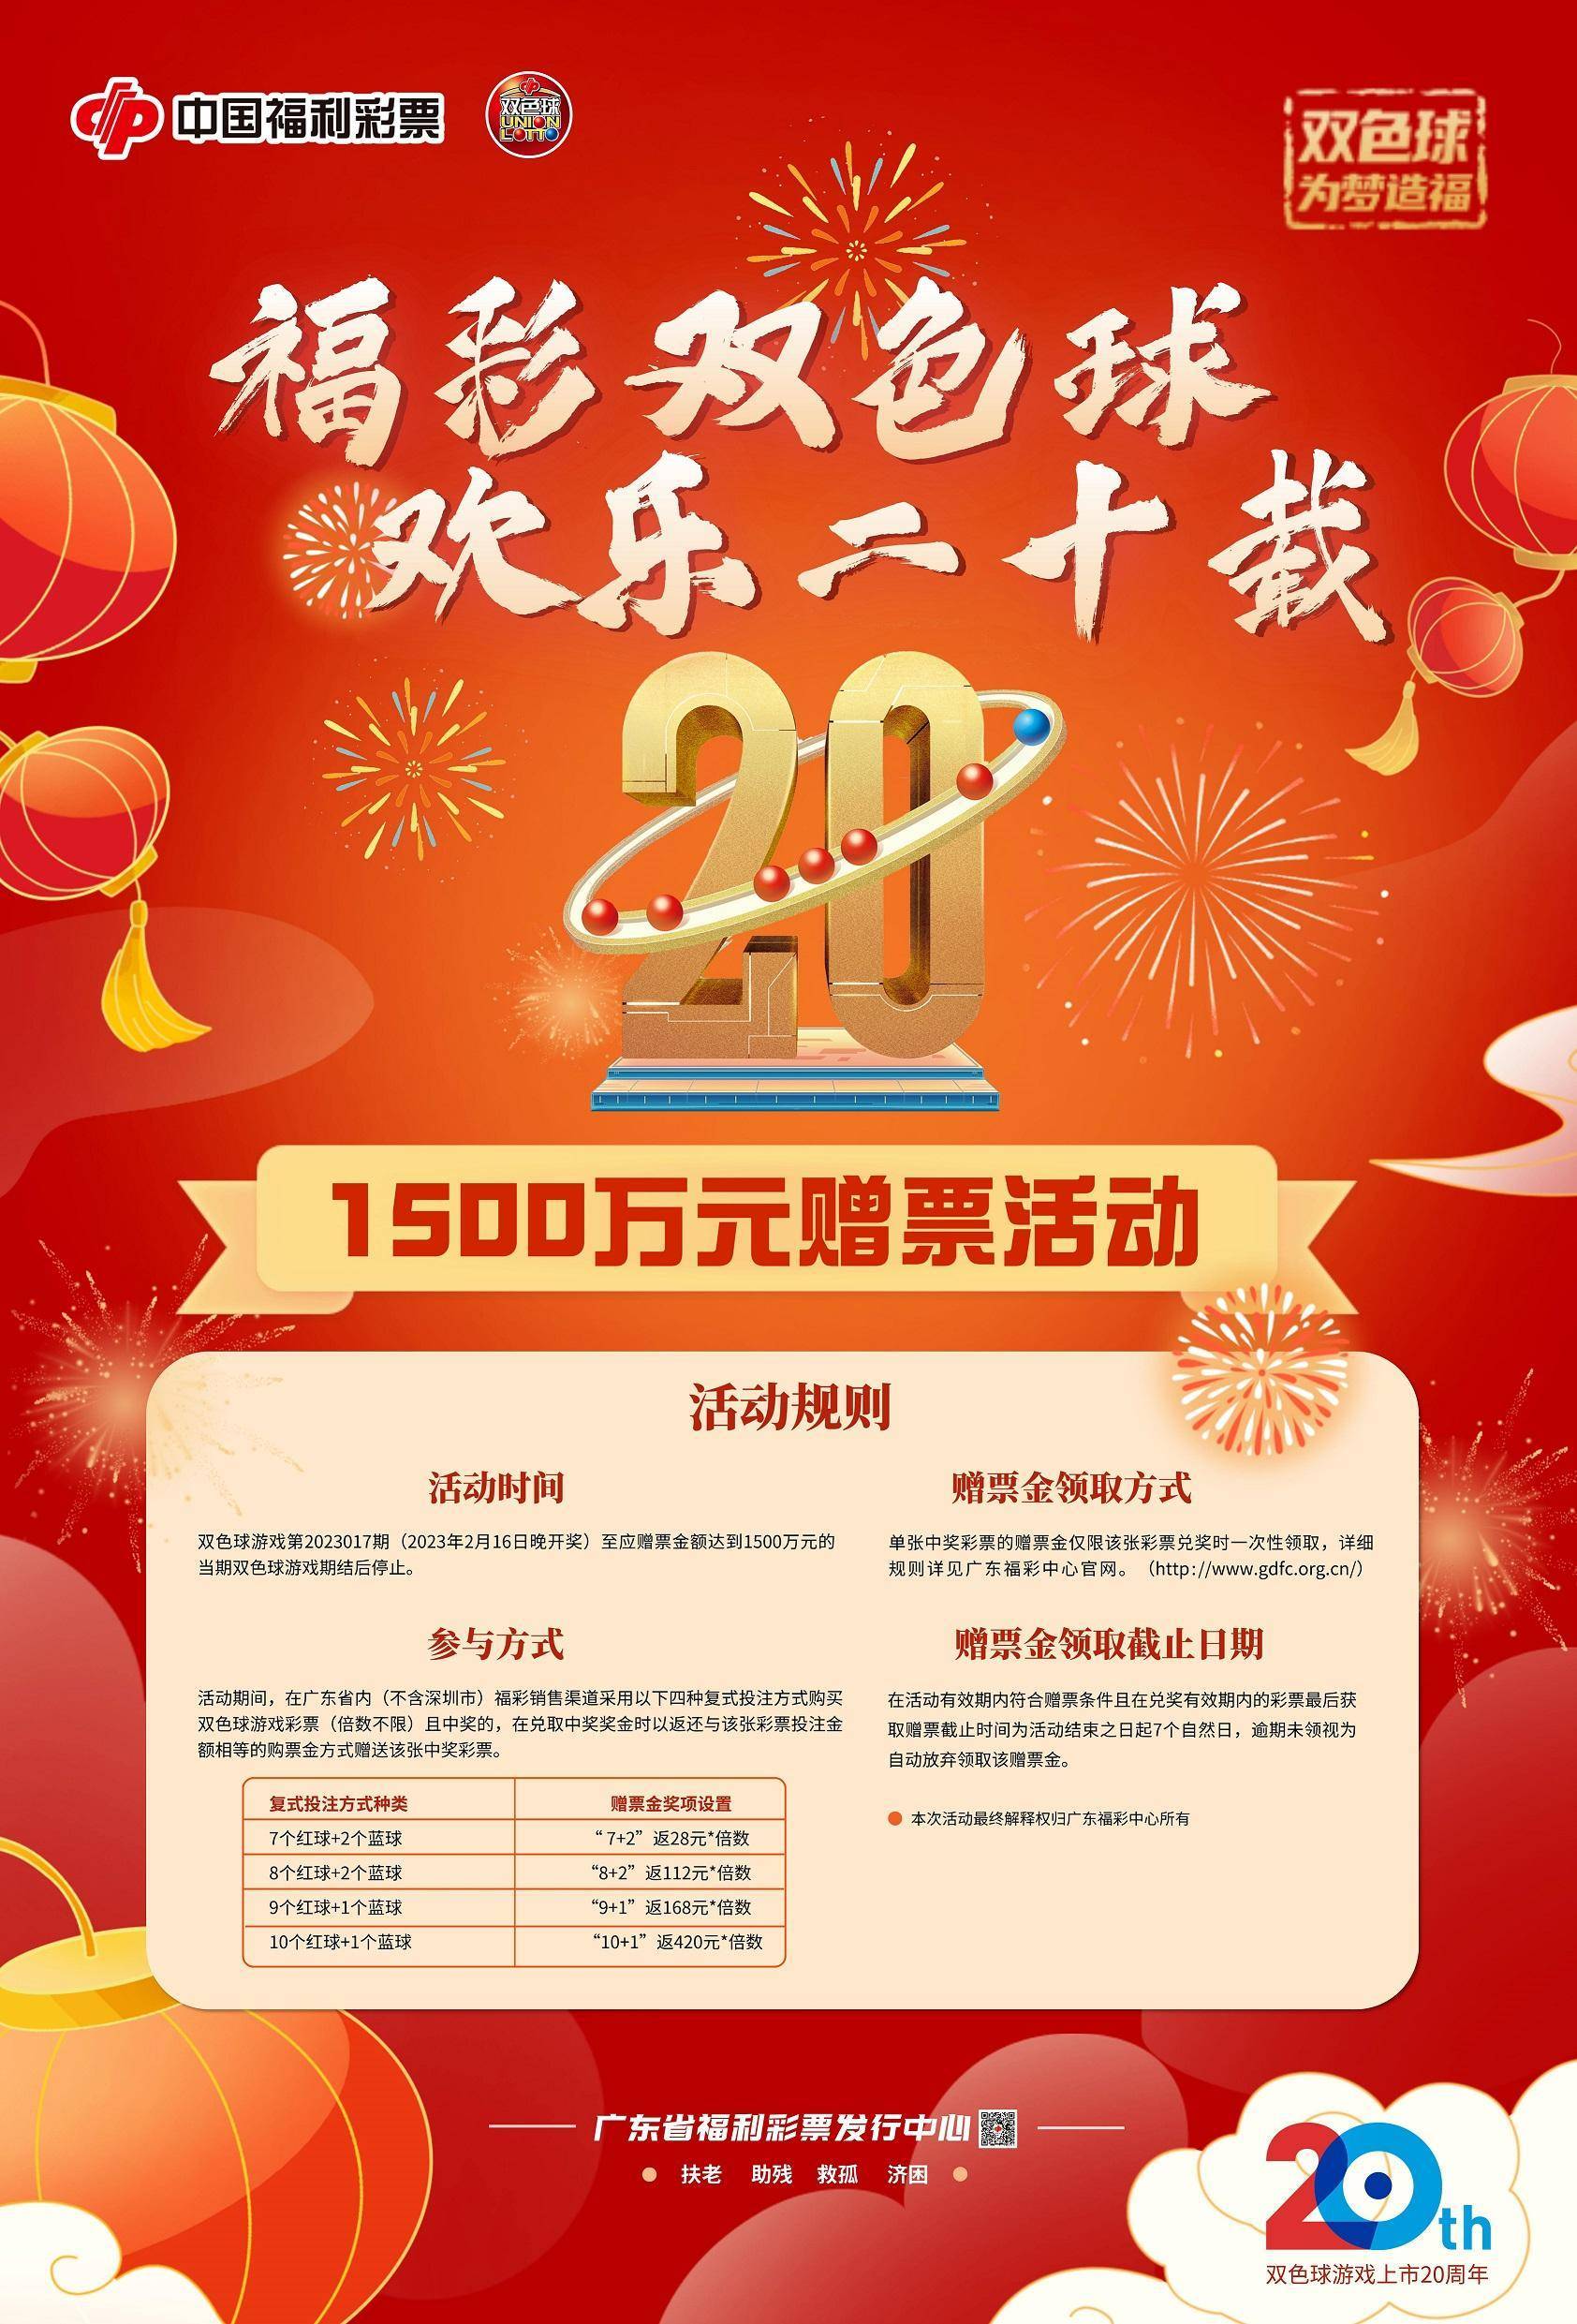 华为活动20元买手机
:庆祝20周年！广东福彩双色球1500万元赠票活动16日开启